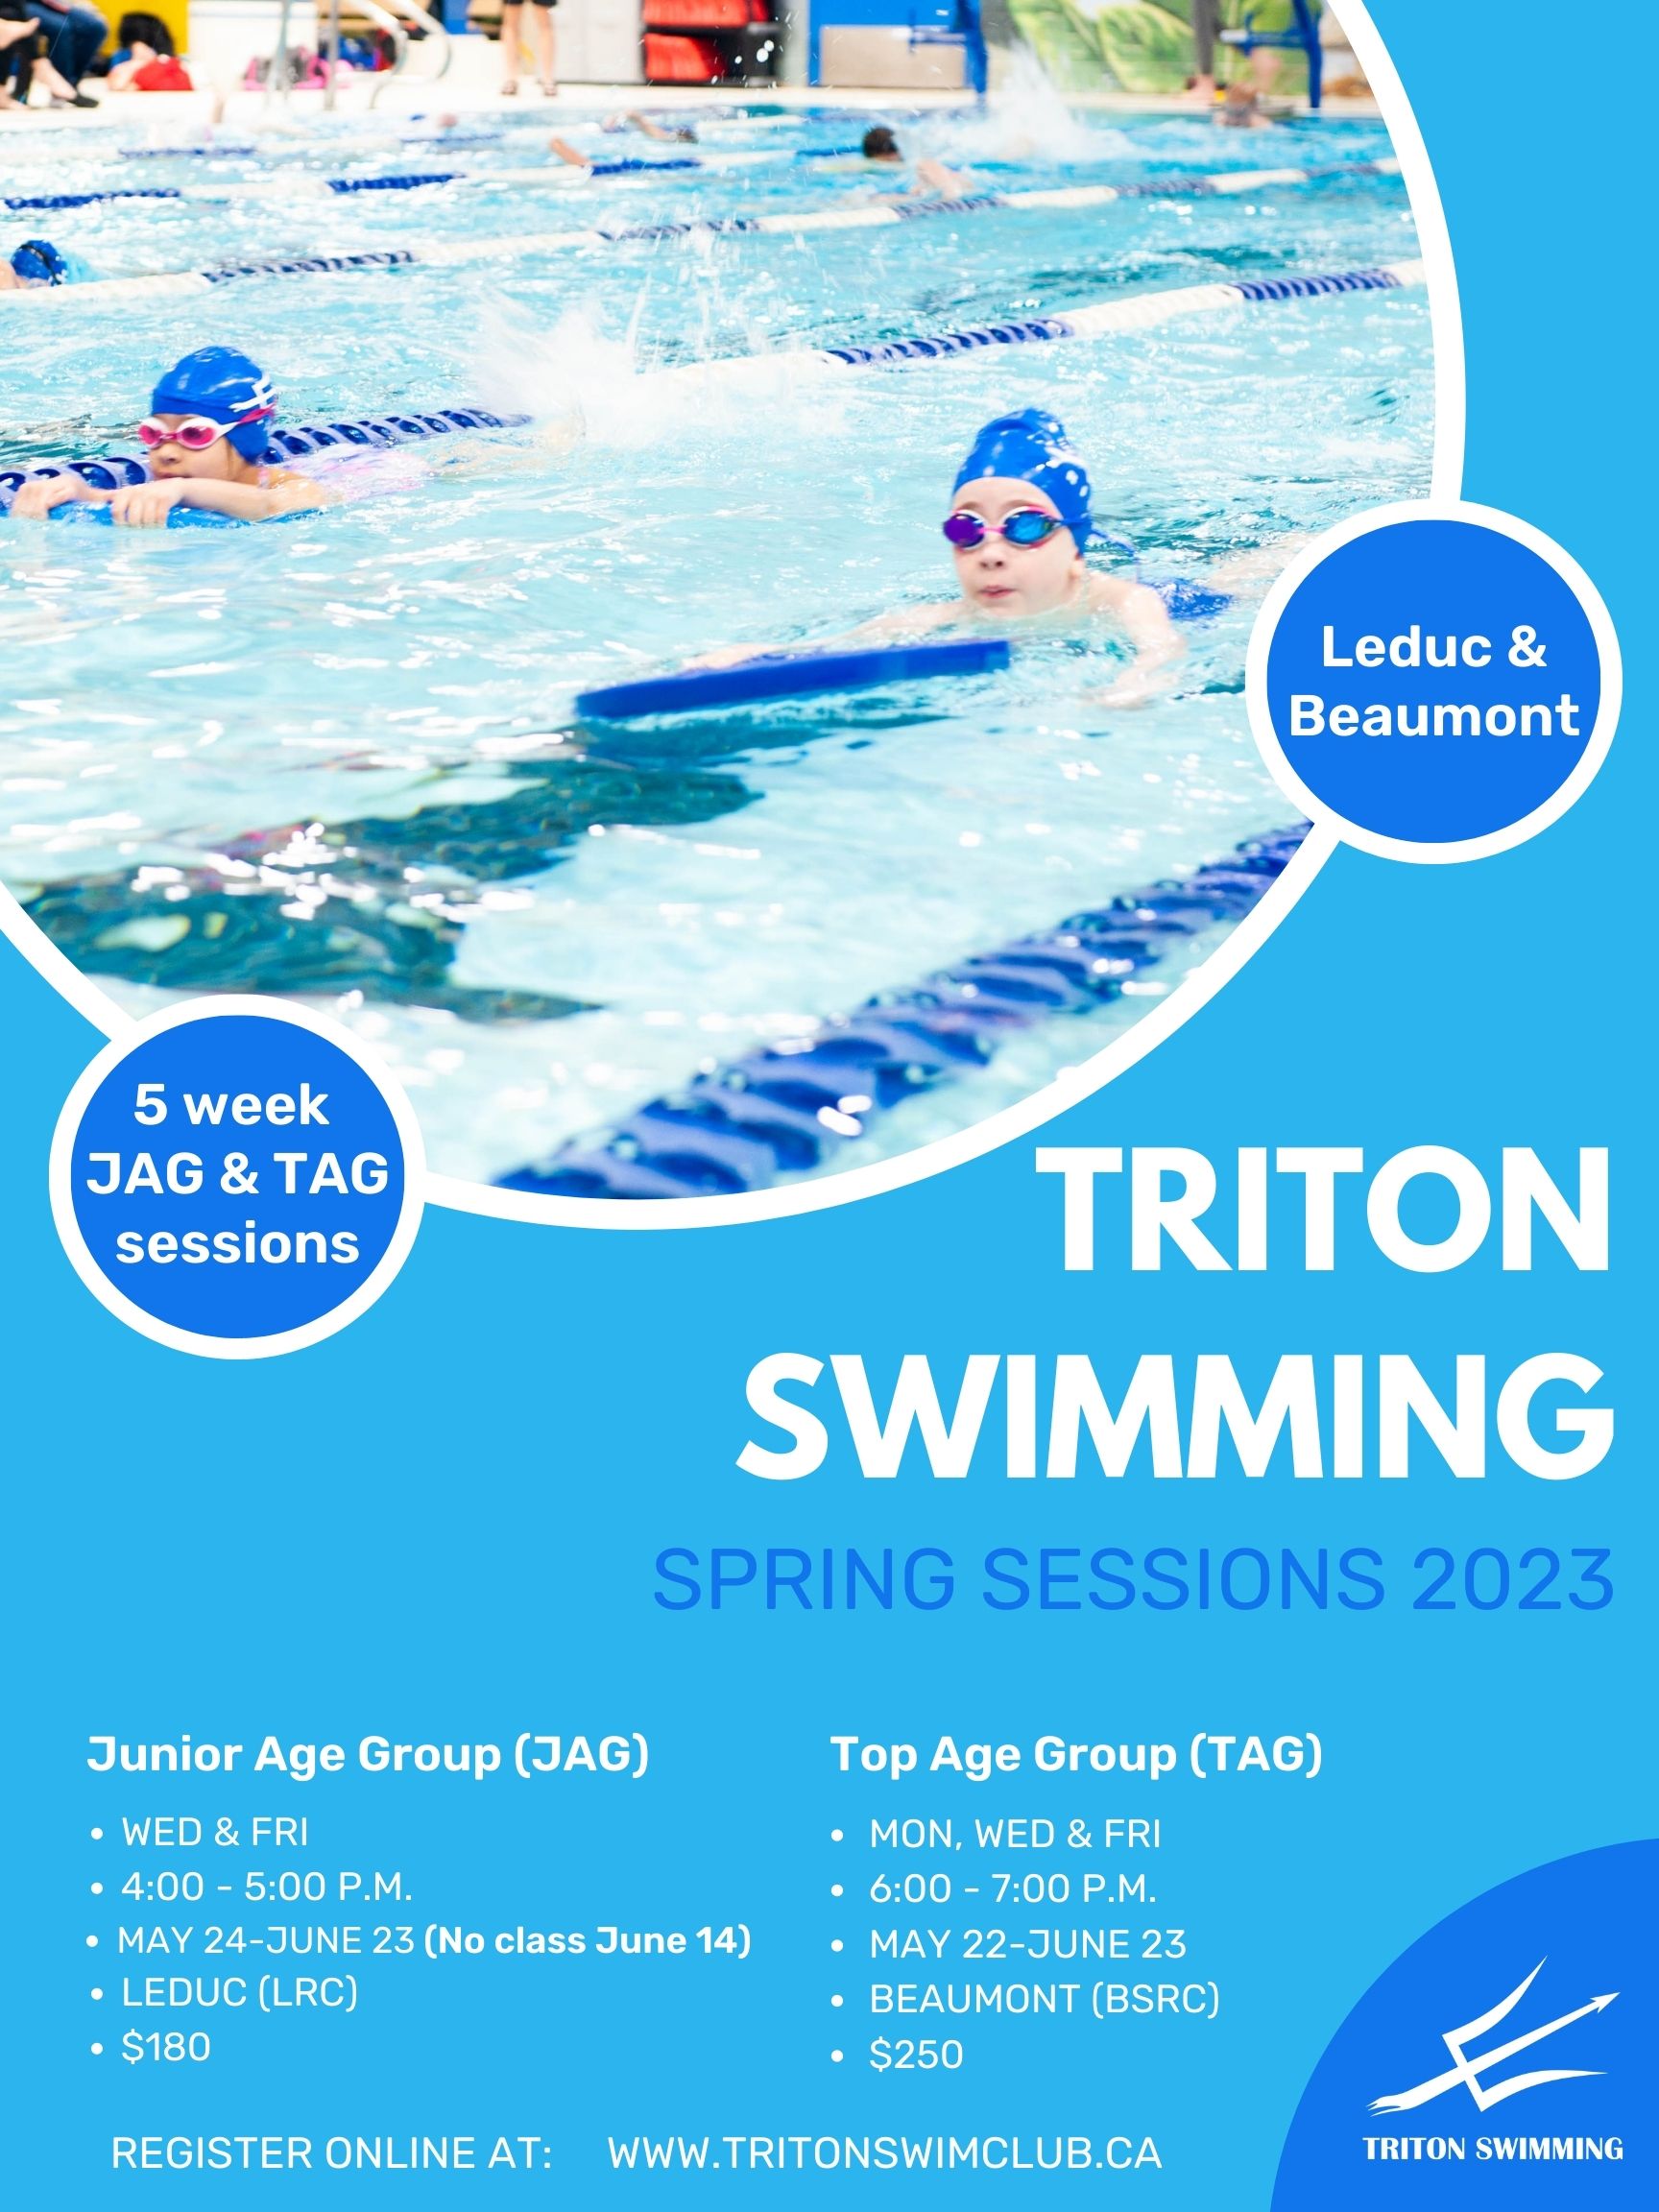 Triton Swimming SPRING SESSION 2023